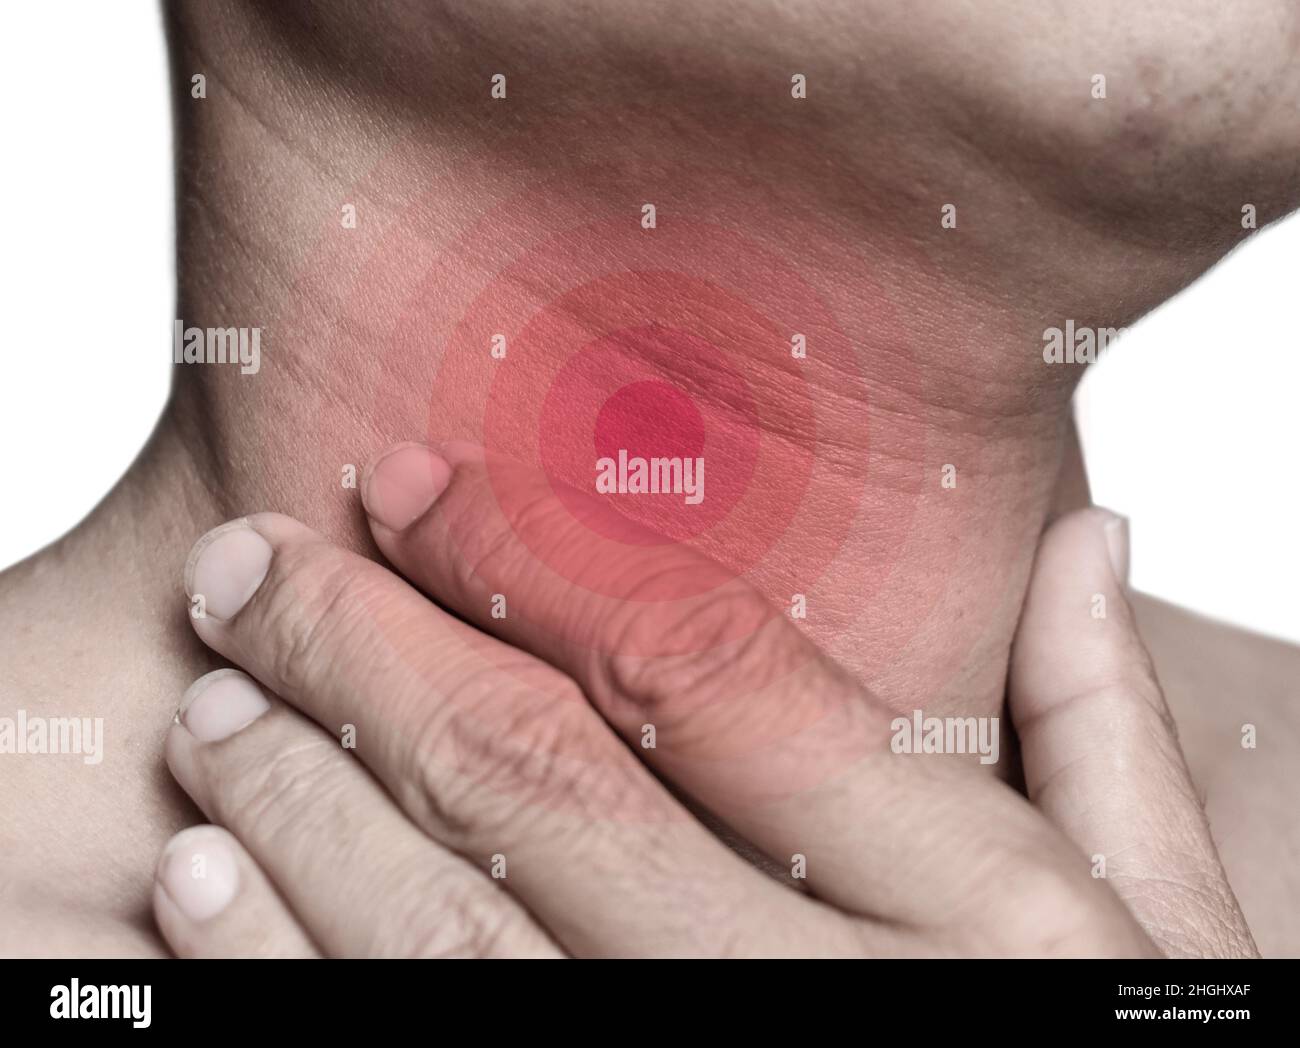 Enrojecimiento en el cuello de Asia, Myanmar hombre. Concepto de dolor de garganta, faringitis, laringitis o disfagia. Foto de stock